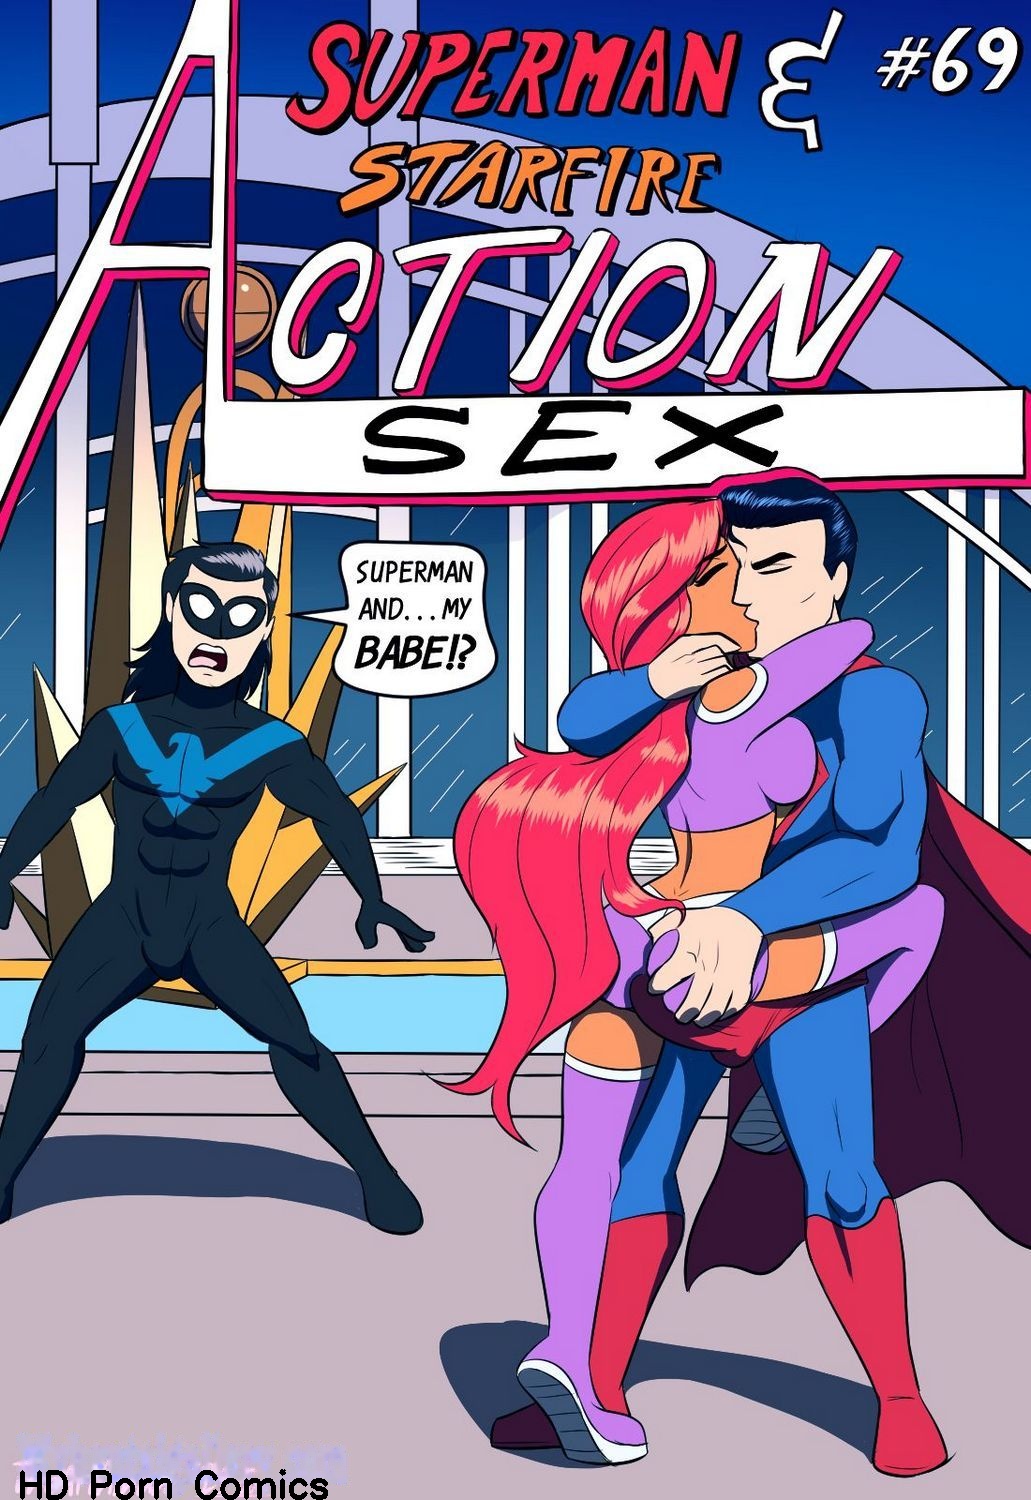 Action Hd Seks - Action Sex comic porn | HD Porn Comics